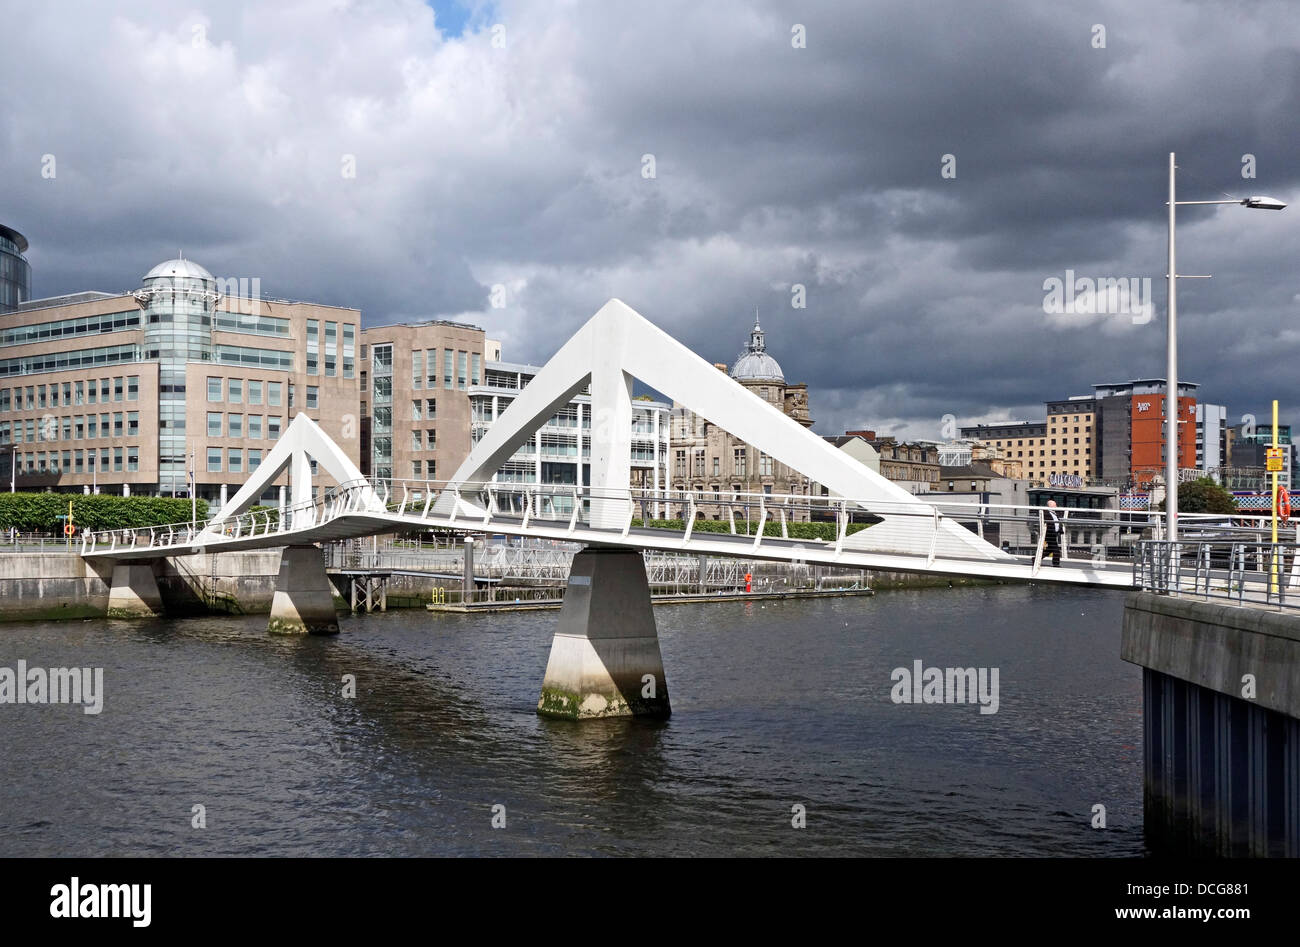 Broomielaw-Tradeston-Fußgängerbrücke über River Clyde in Glasgow Schottland benannt auch liebevoll "Squiggly Brücke" Stockfoto